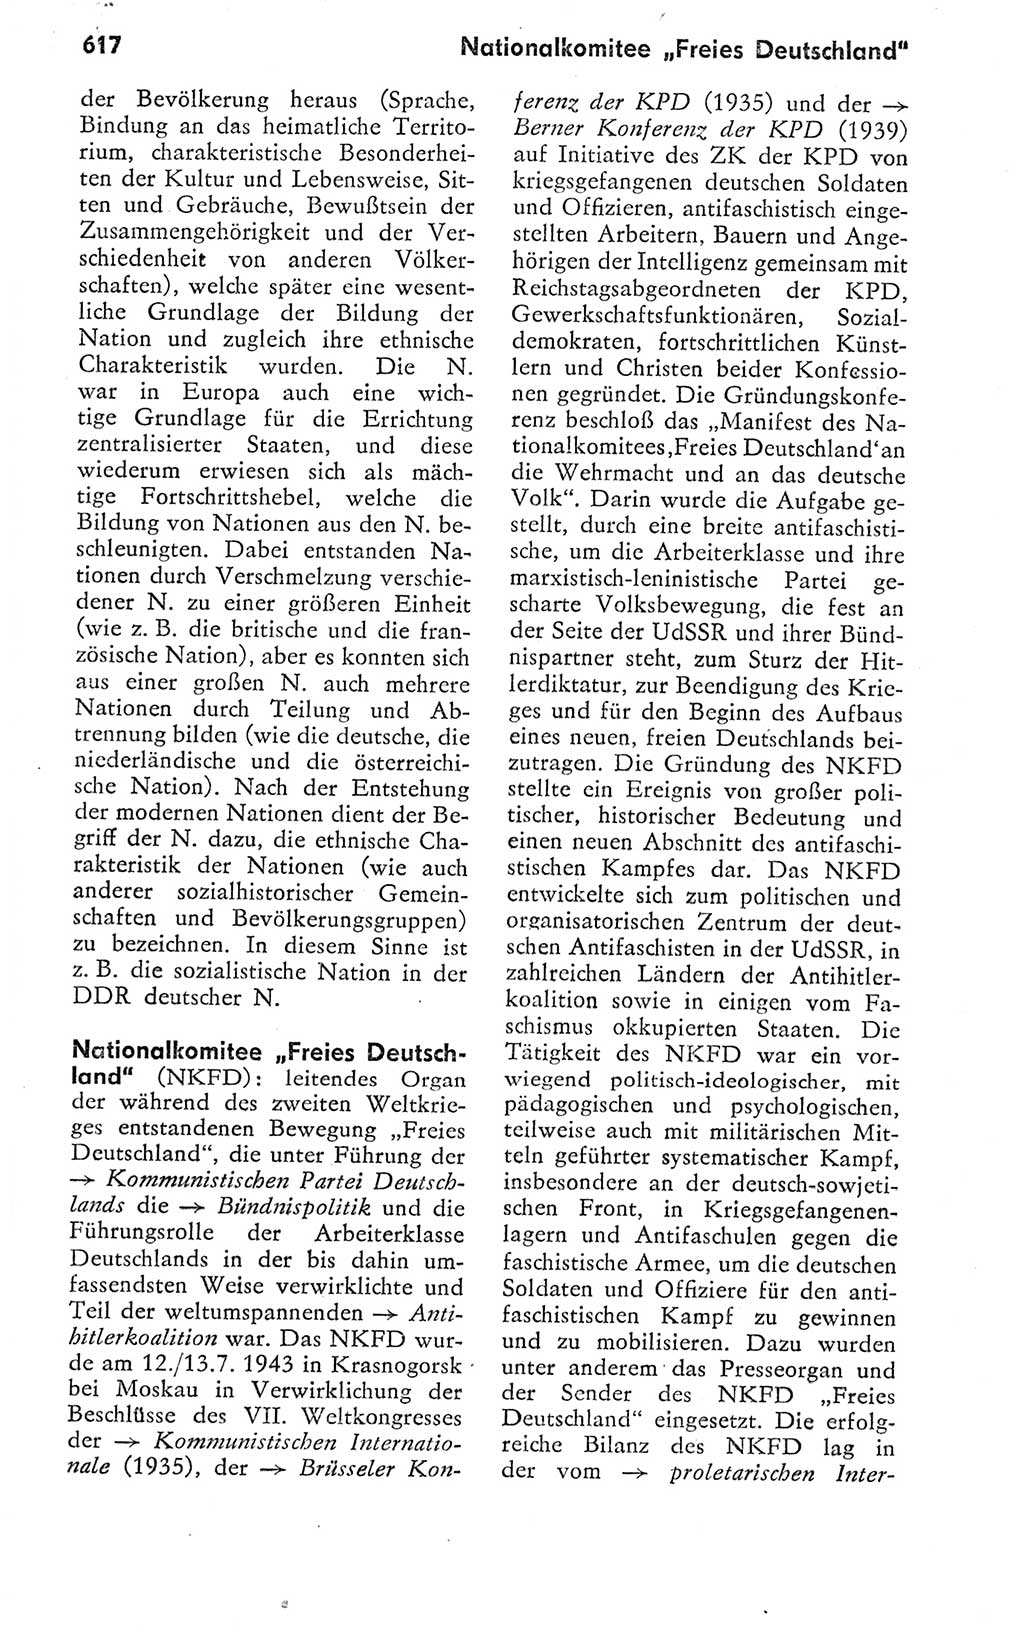 Kleines politisches Wörterbuch [Deutsche Demokratische Republik (DDR)] 1978, Seite 617 (Kl. pol. Wb. DDR 1978, S. 617)